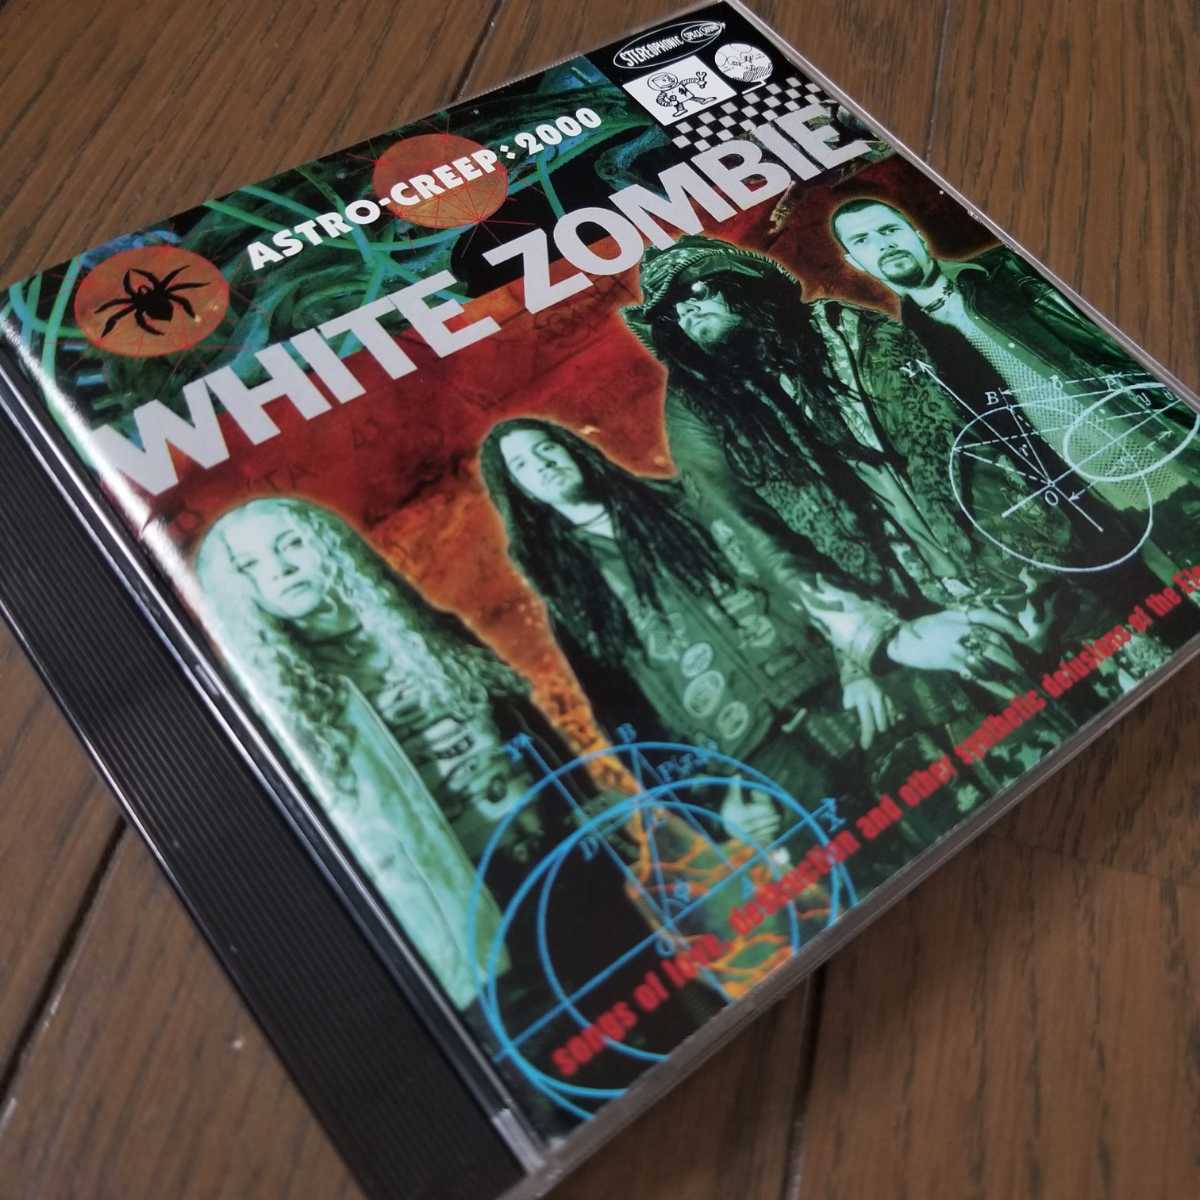 ★WHITE ZOMBIE「ASTRO-CREEP:2000」輸入盤アルバム ホワイト・ゾンビ CD 